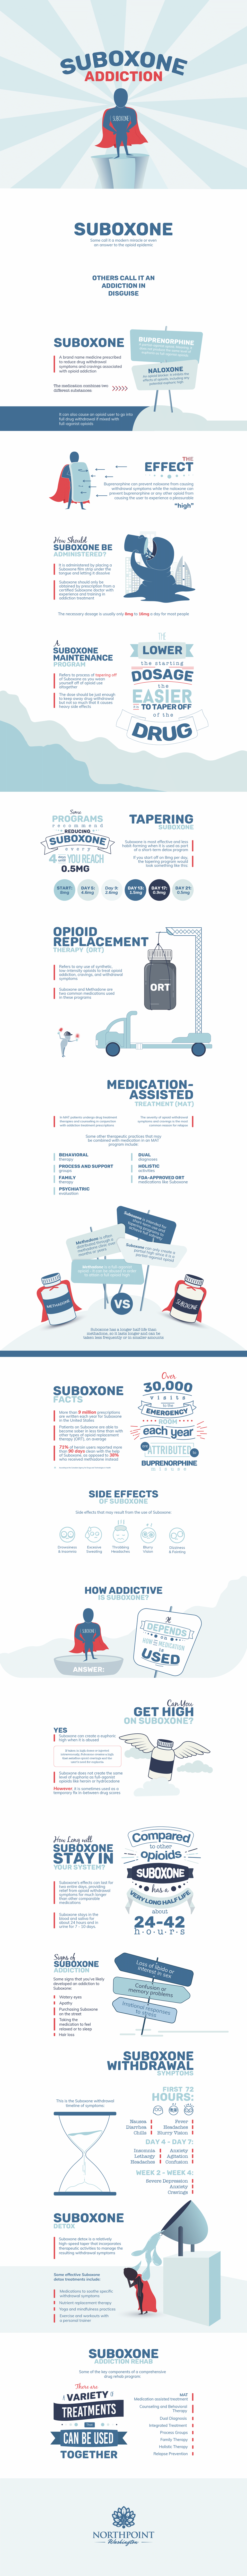 Suboxone Addiction Infographic